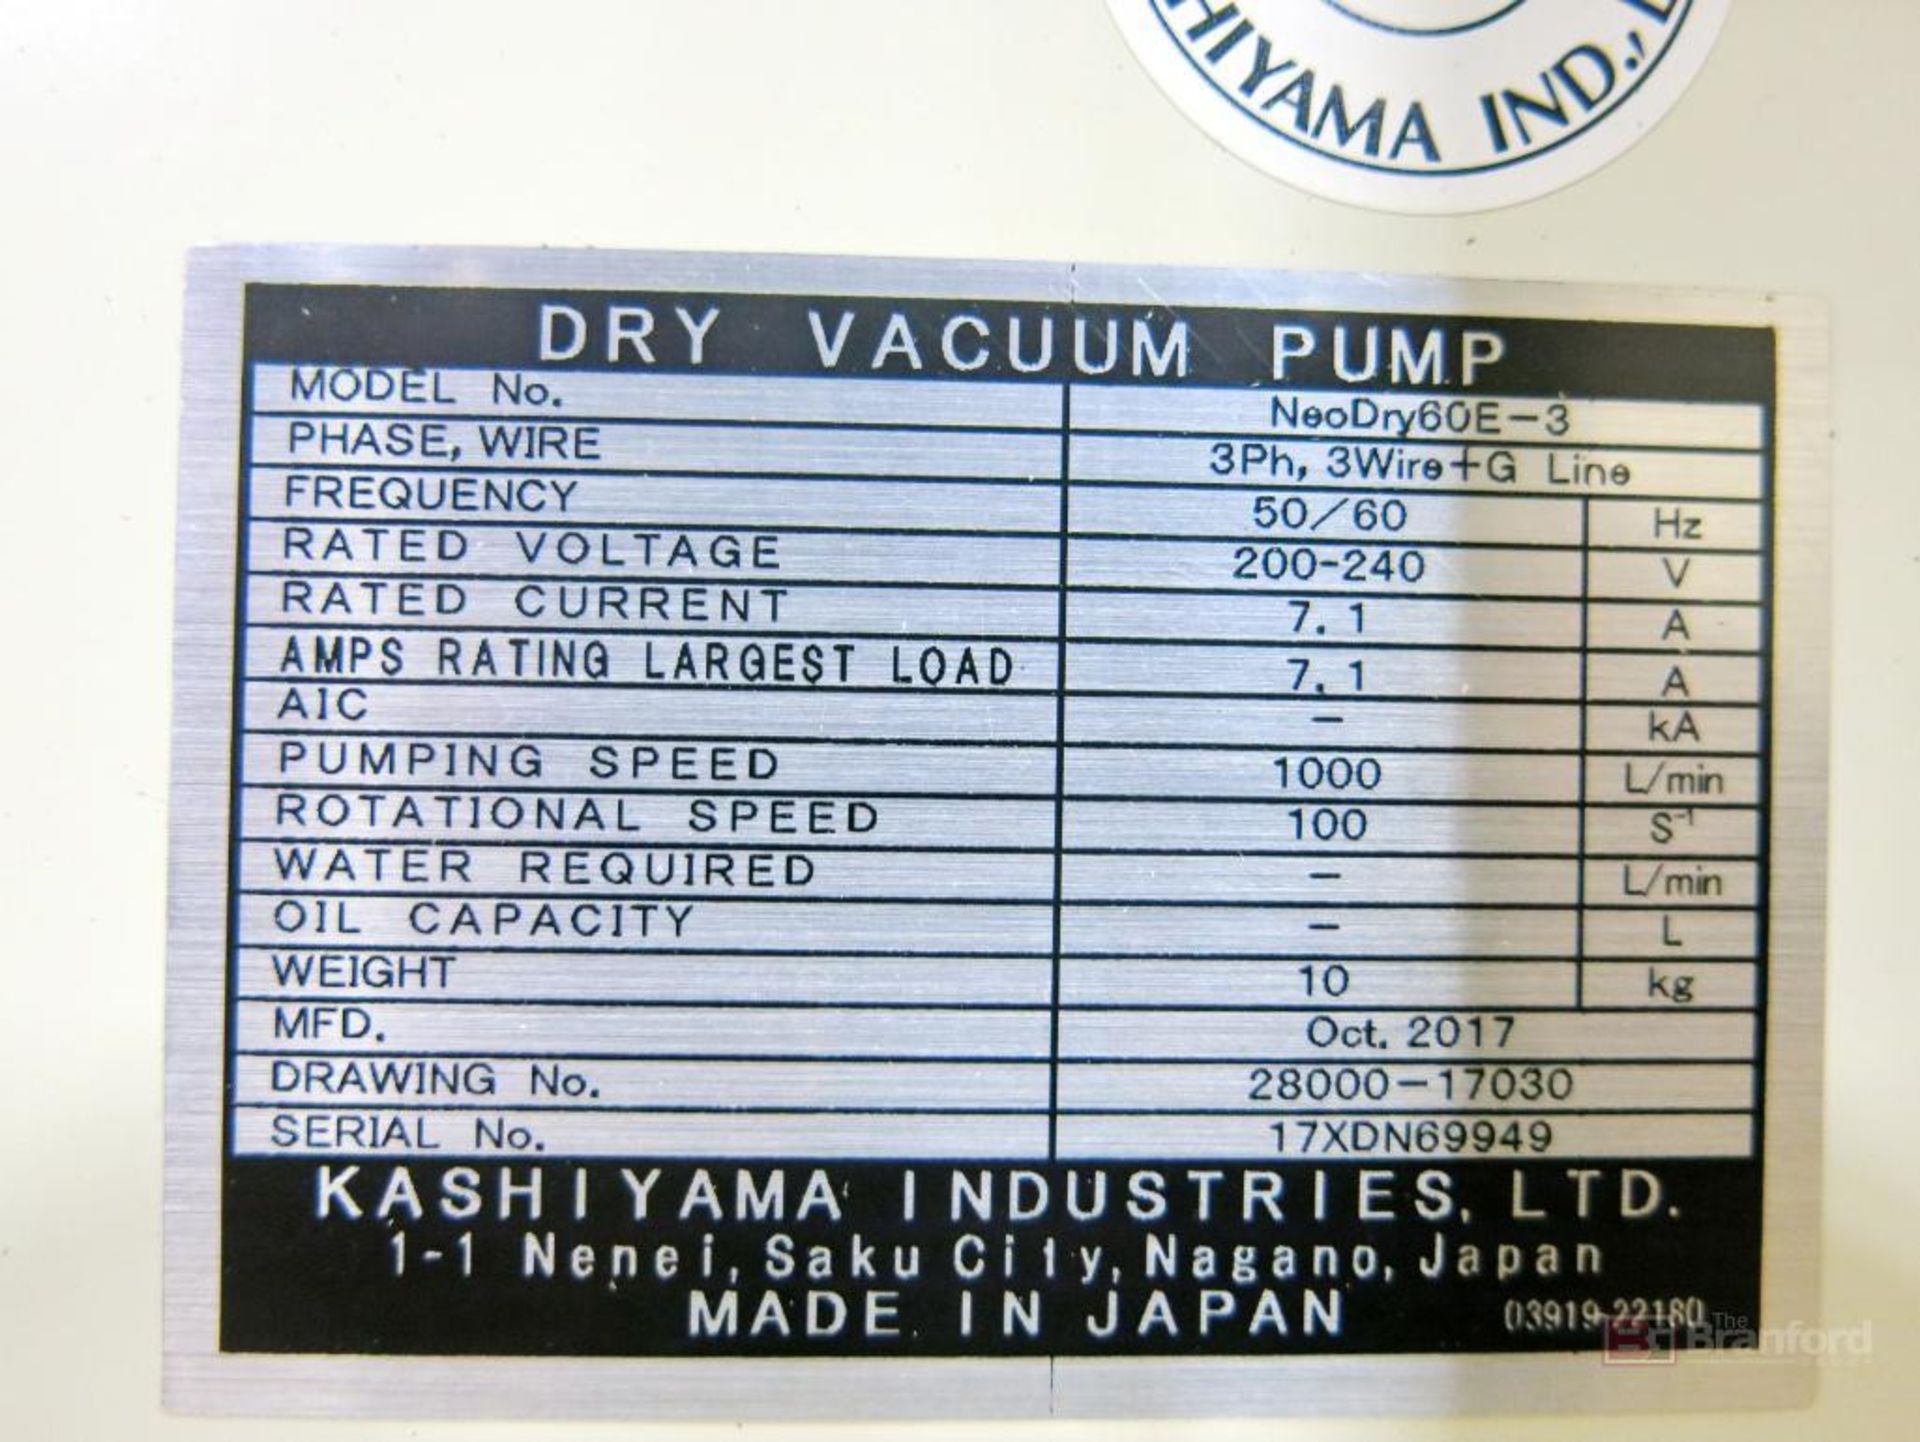 Kashiyama Neodry 60E Dry Vacuum Pumps - Image 2 of 2